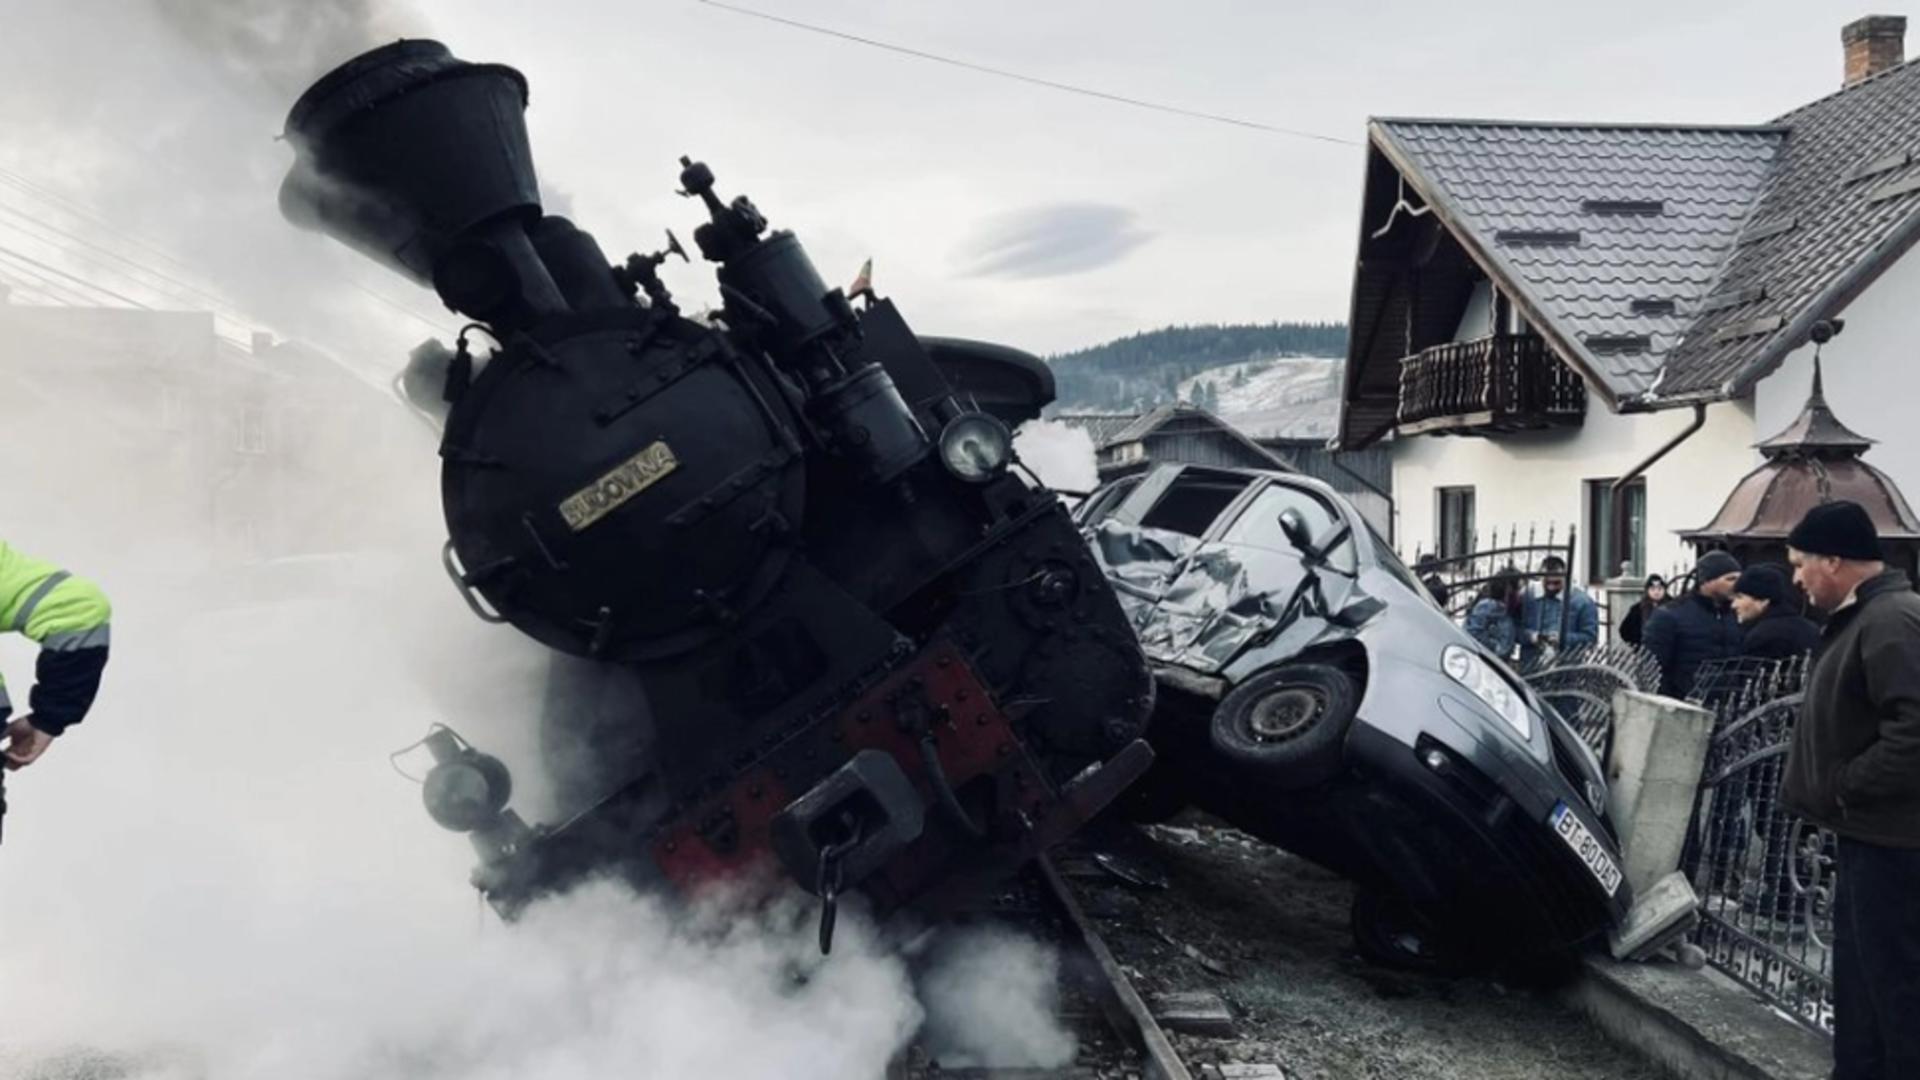 Imagini ȘOCANTE. Mocănița din Suceava, implicată într-un accident violent. În tren erau zeci de pasageri – VIDEO